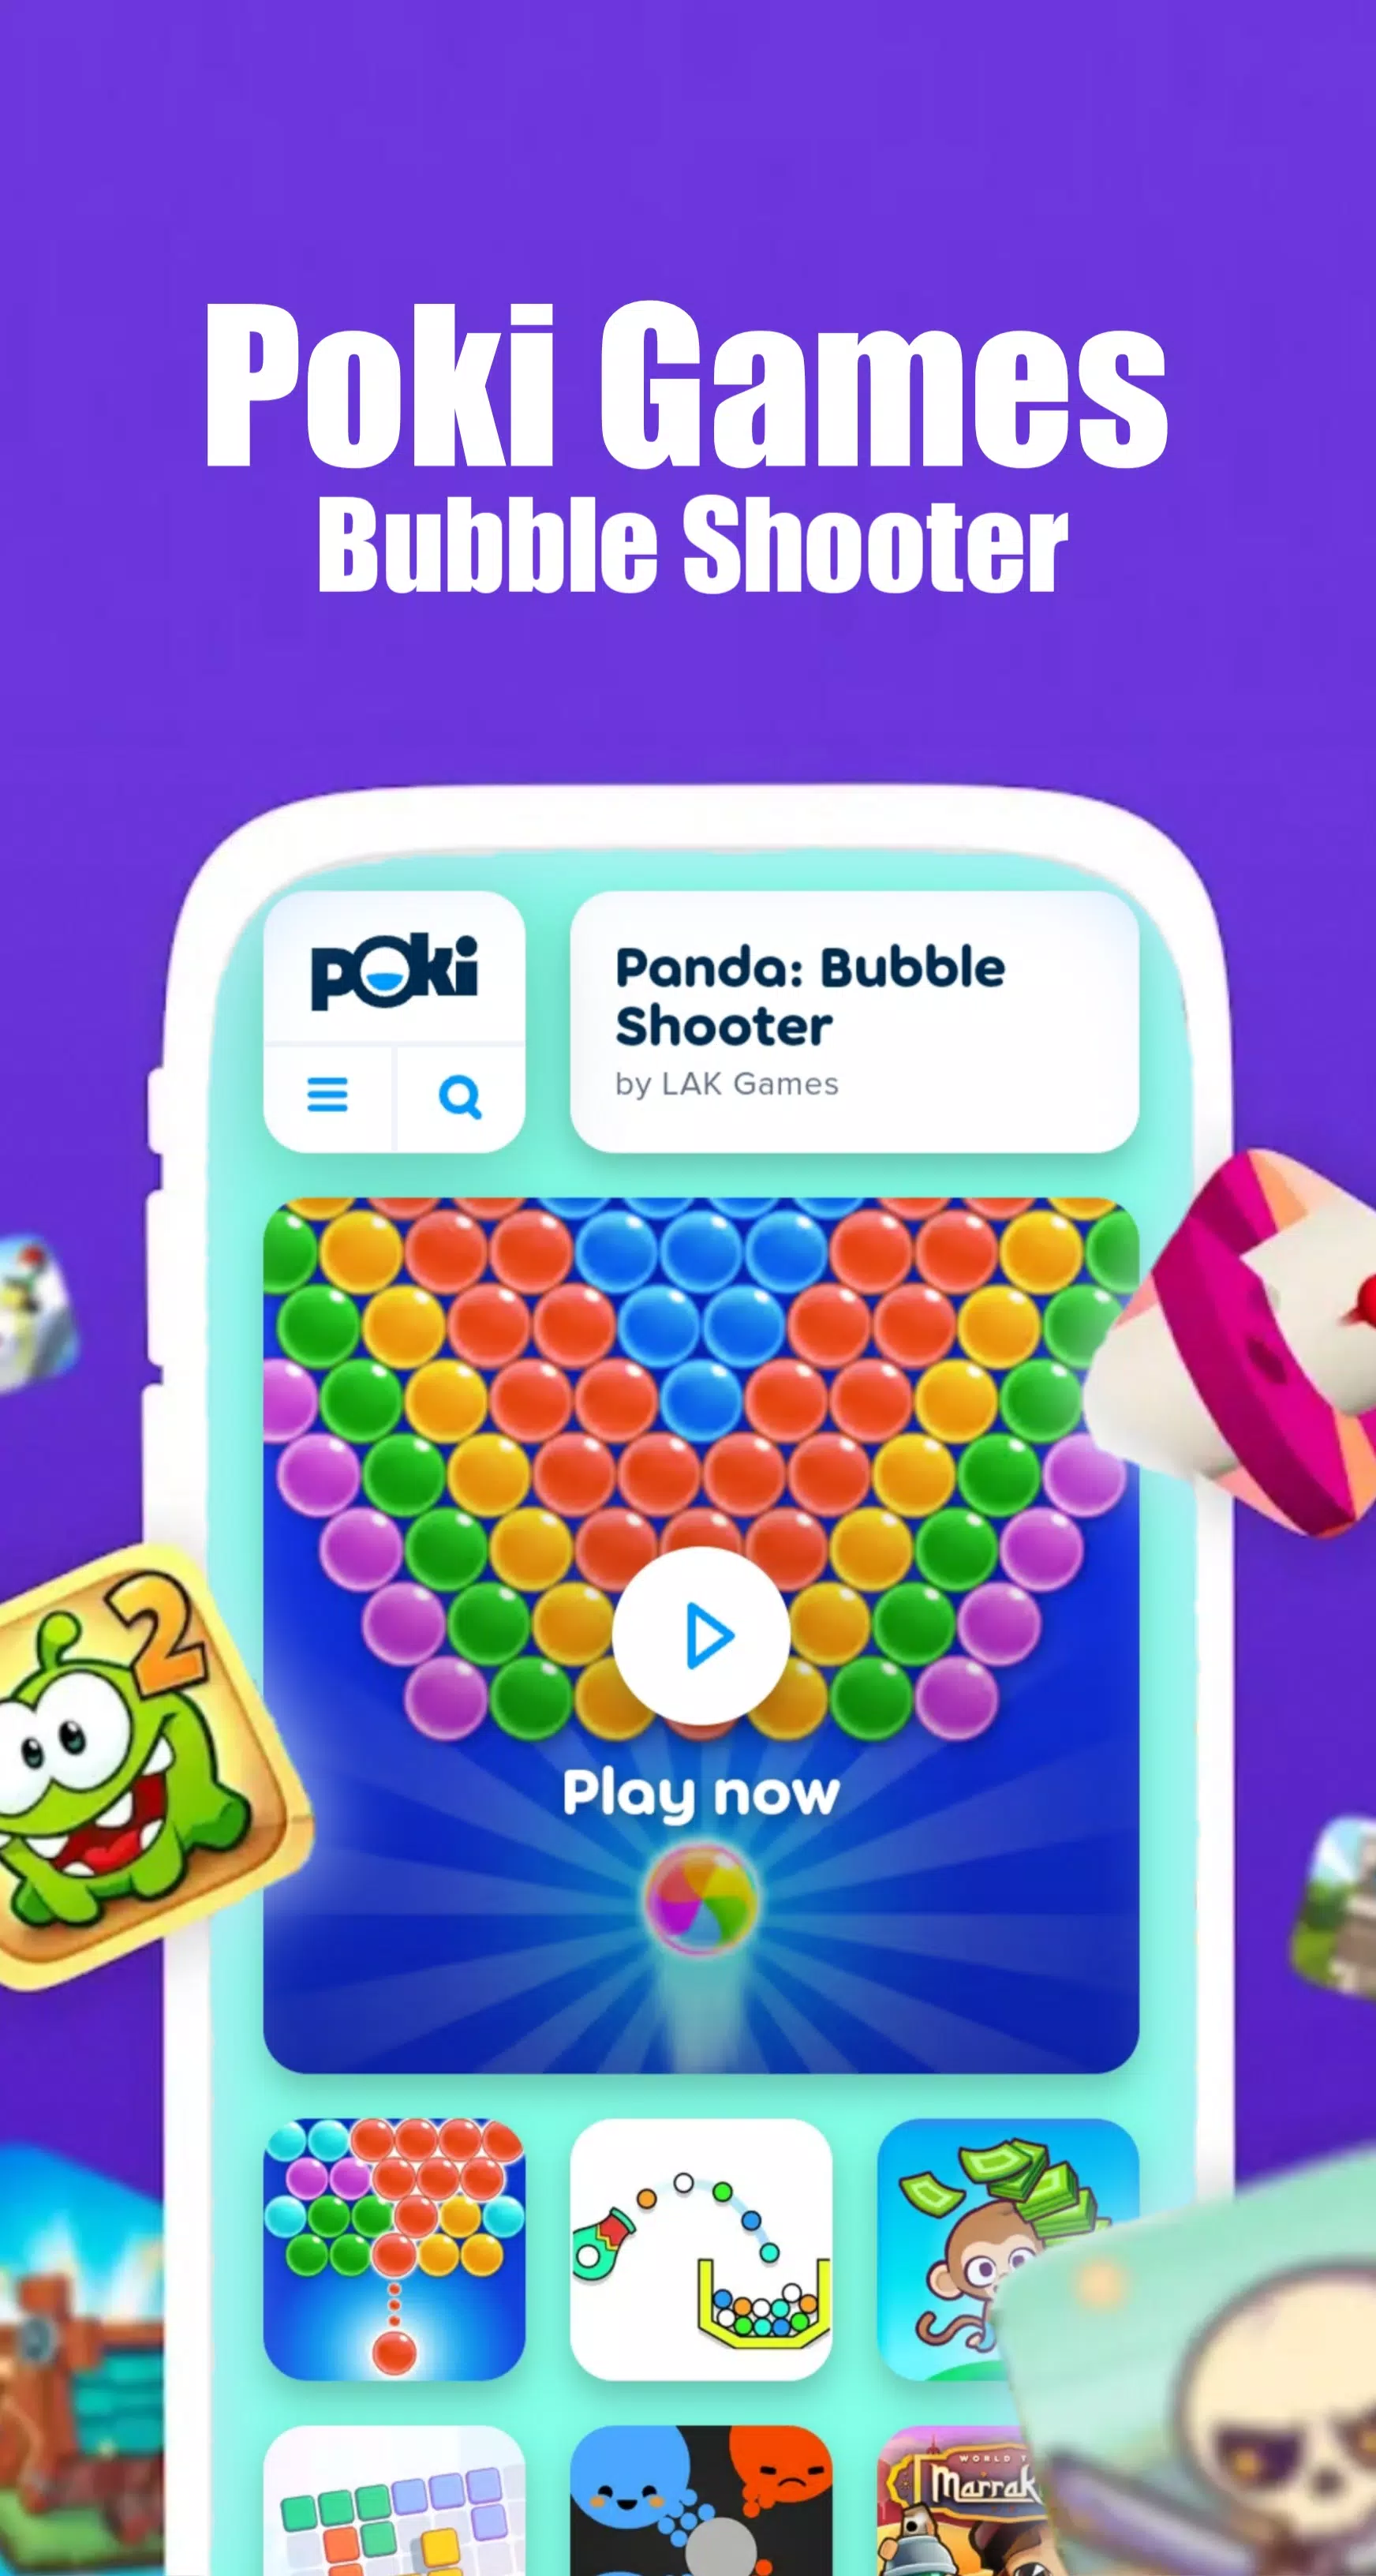 I DID IT ON POKI! @Poki #poki #pokigames #game #android #ss